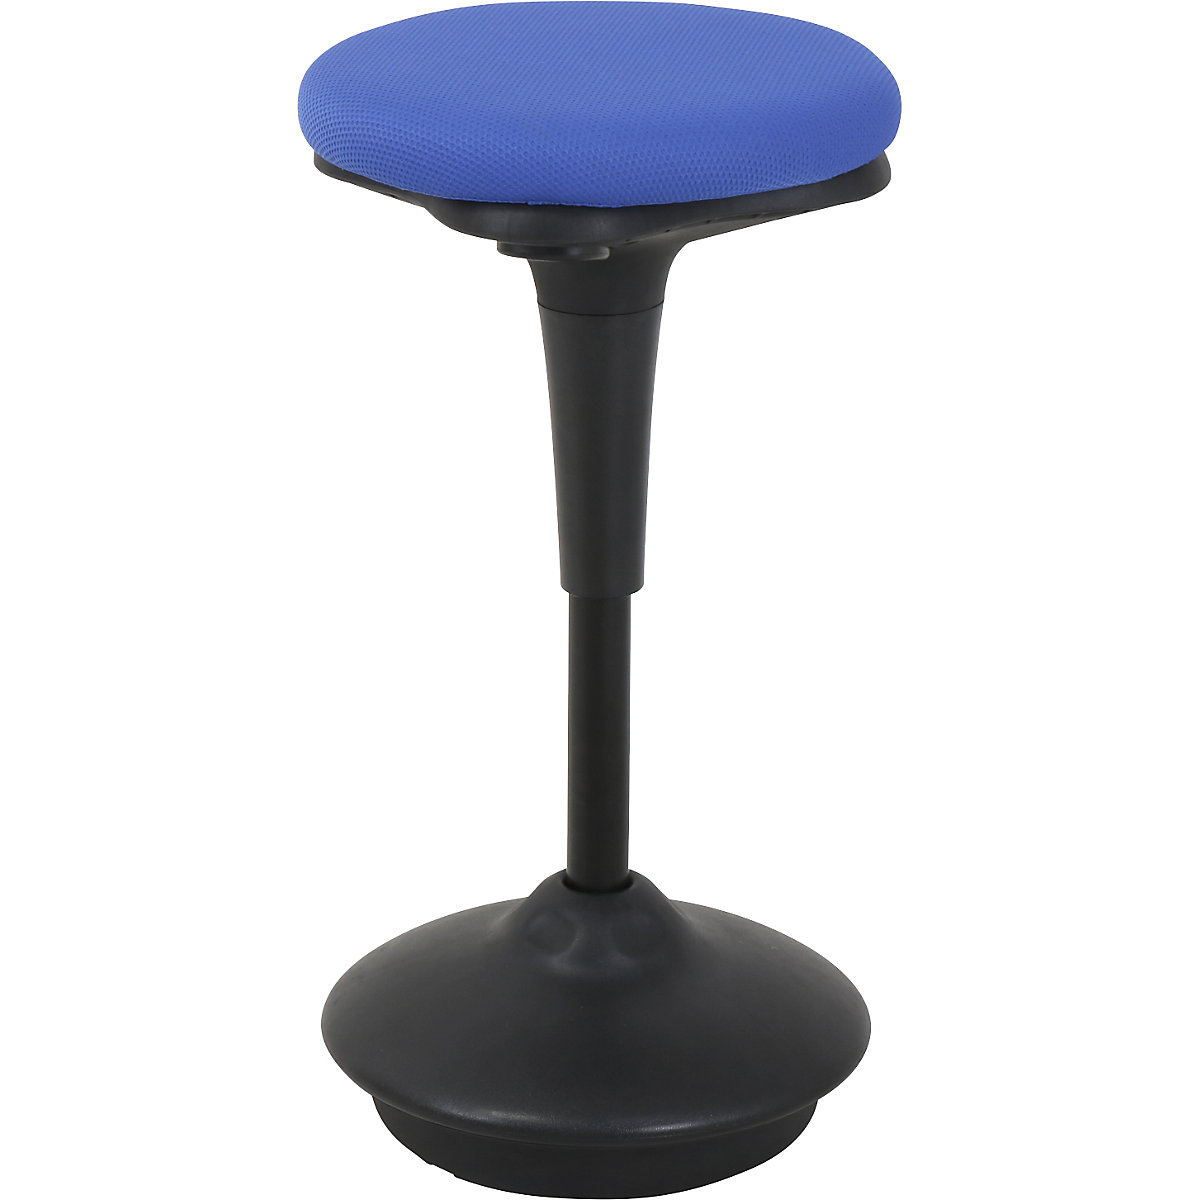 Apoio de pé 6131 – Twinco, assento redondo Ø 340 mm, forro azul-4